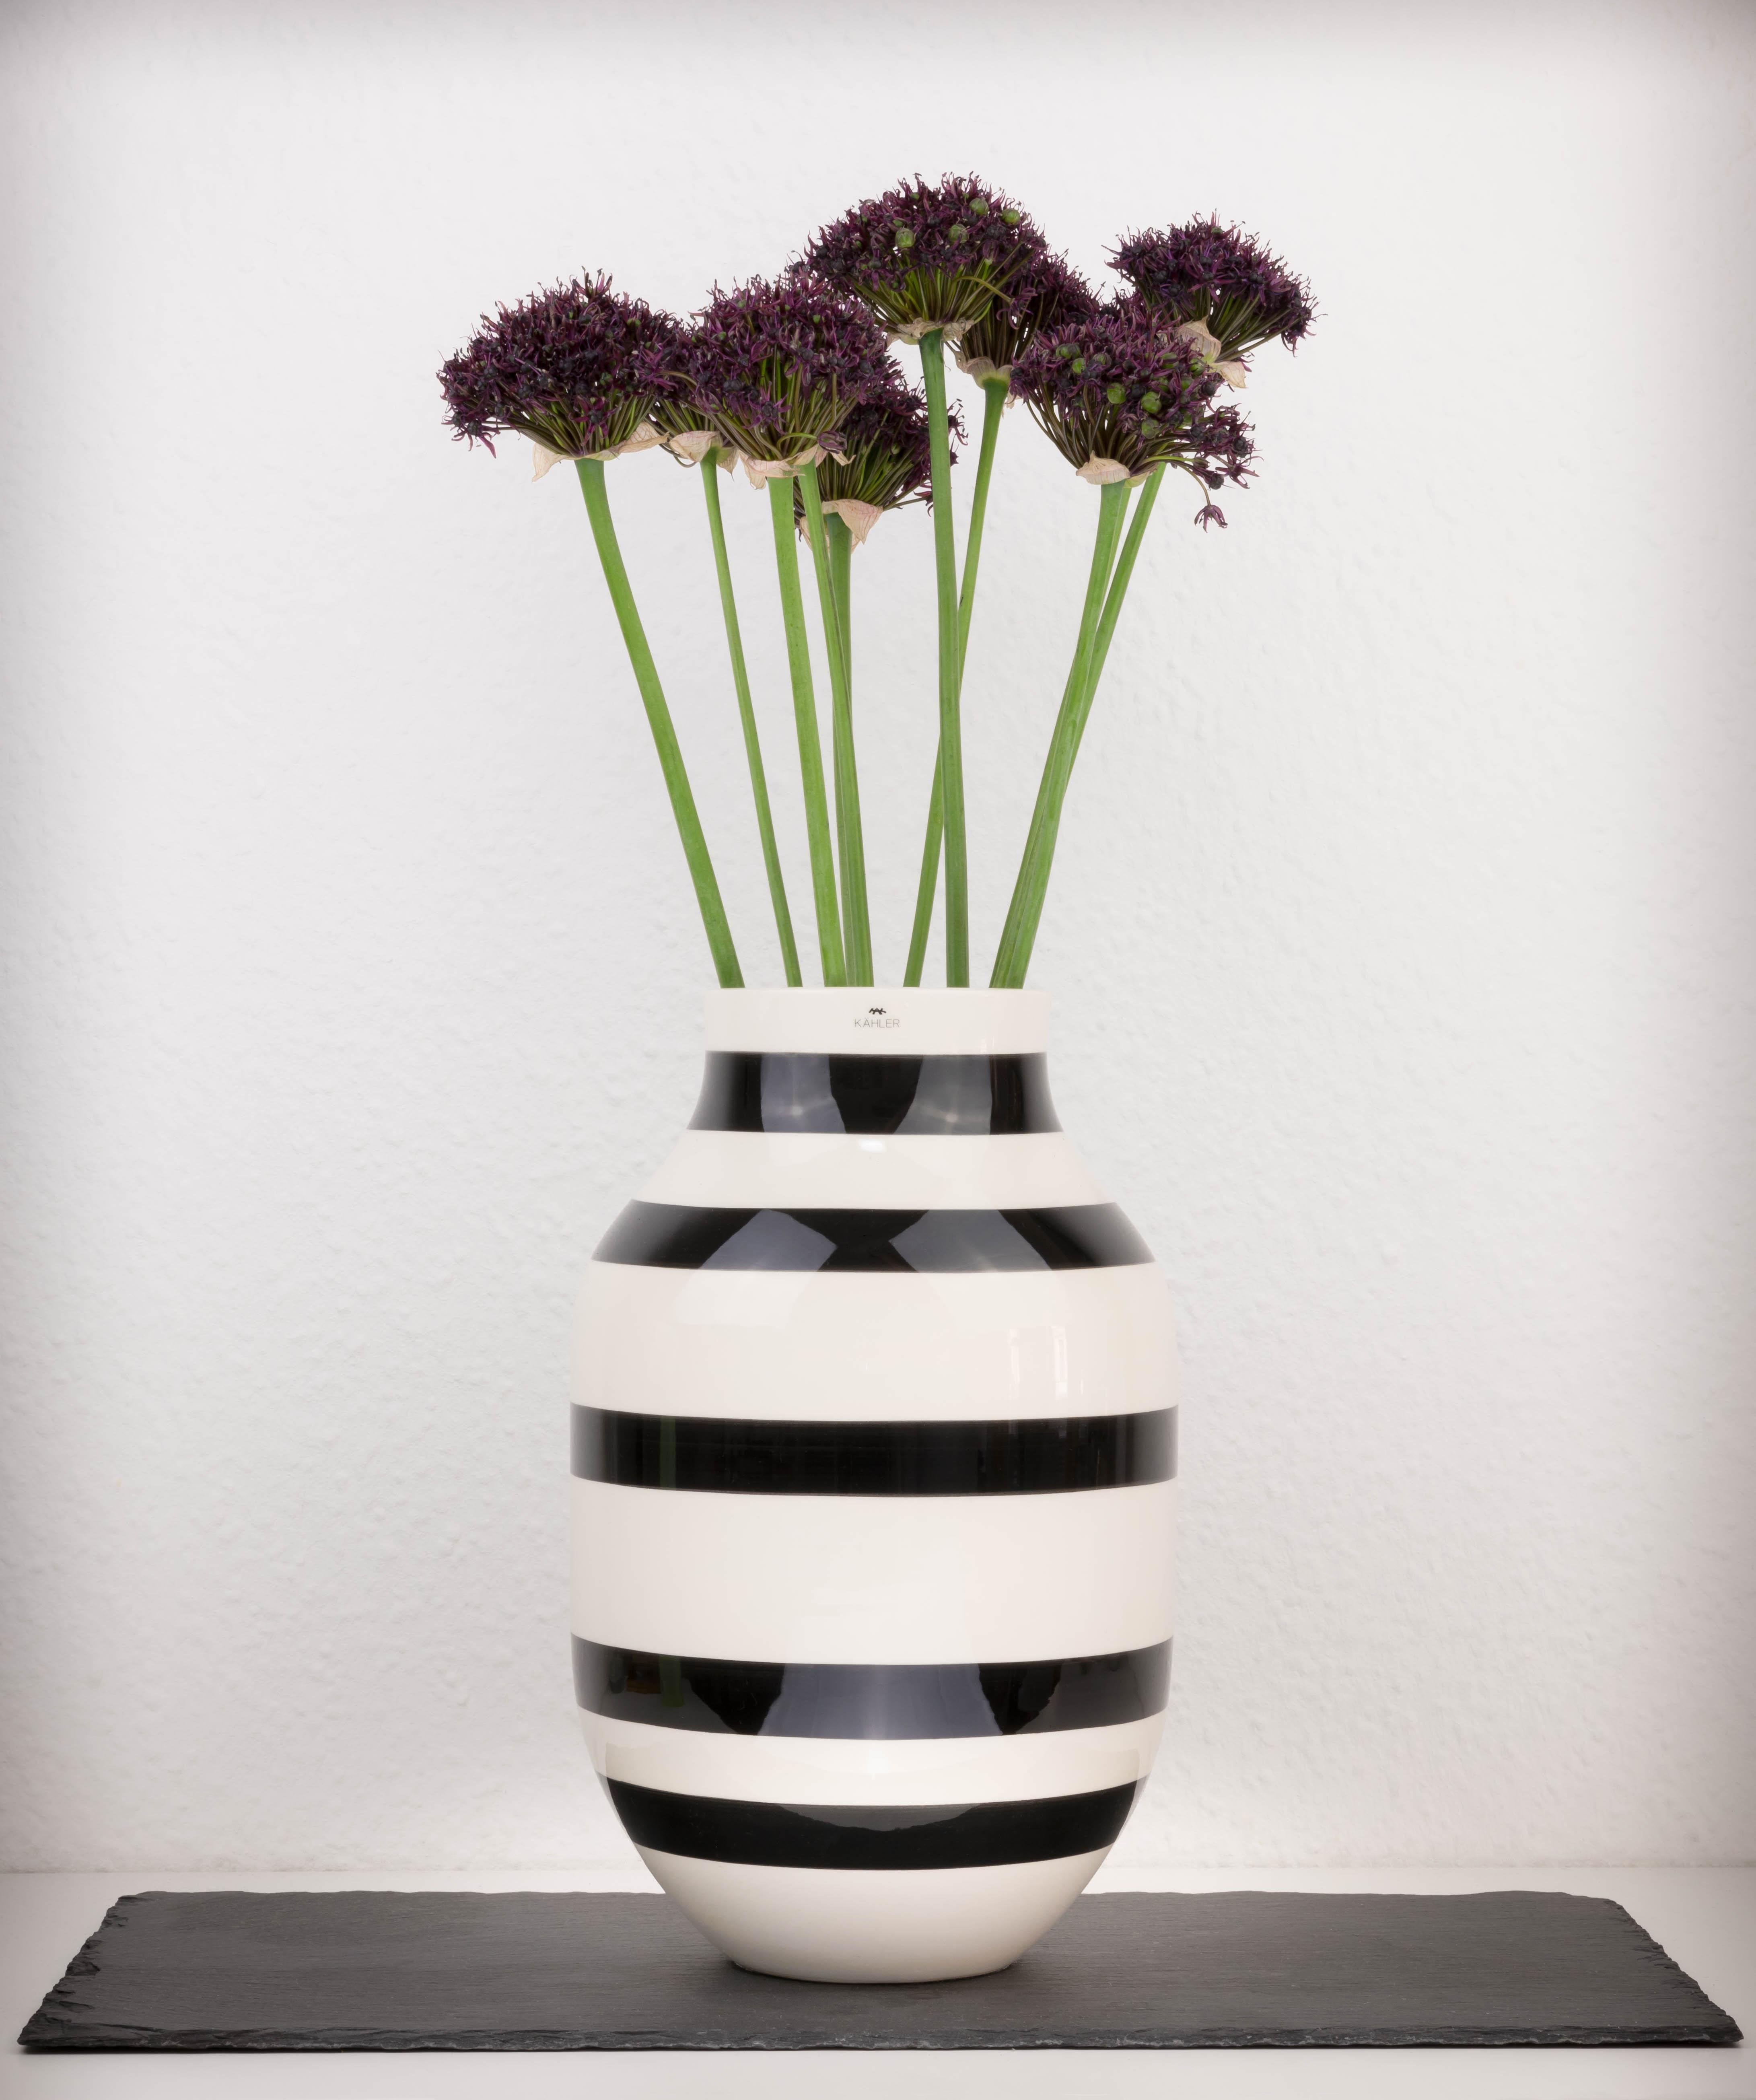 Lieblingsvase 🌷 Was wäre der Frühling ohne Blumen? #kähleromaggio #vasenliebe